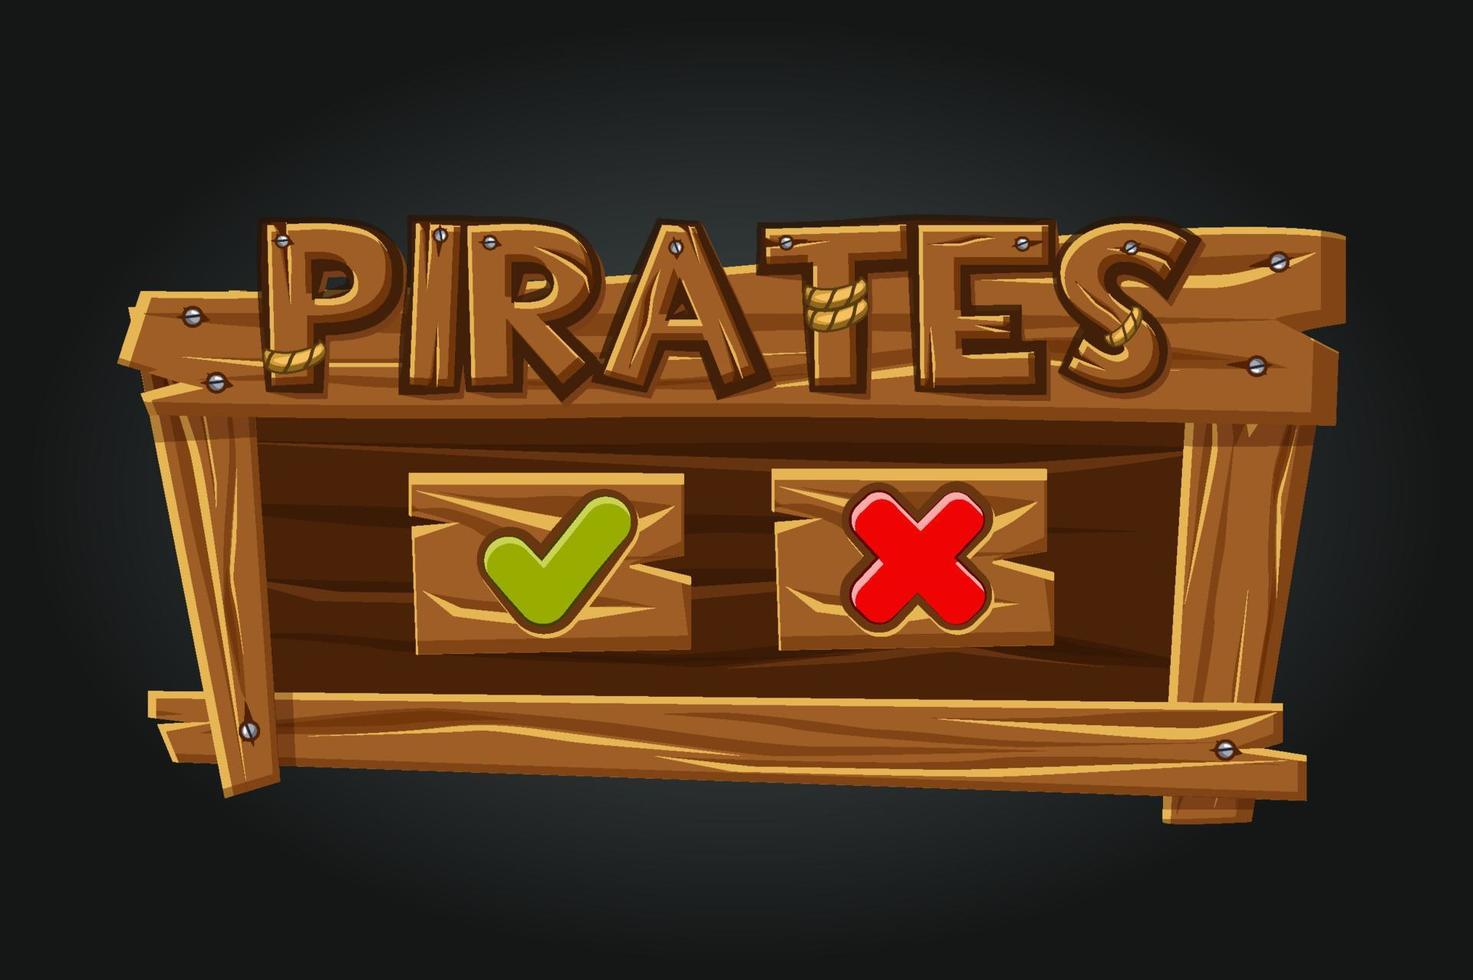 ventana de reproducción de la interfaz de usuario de piratas del juego. Botones sí y cierra. interfaz de madera con logo de piratas. vector